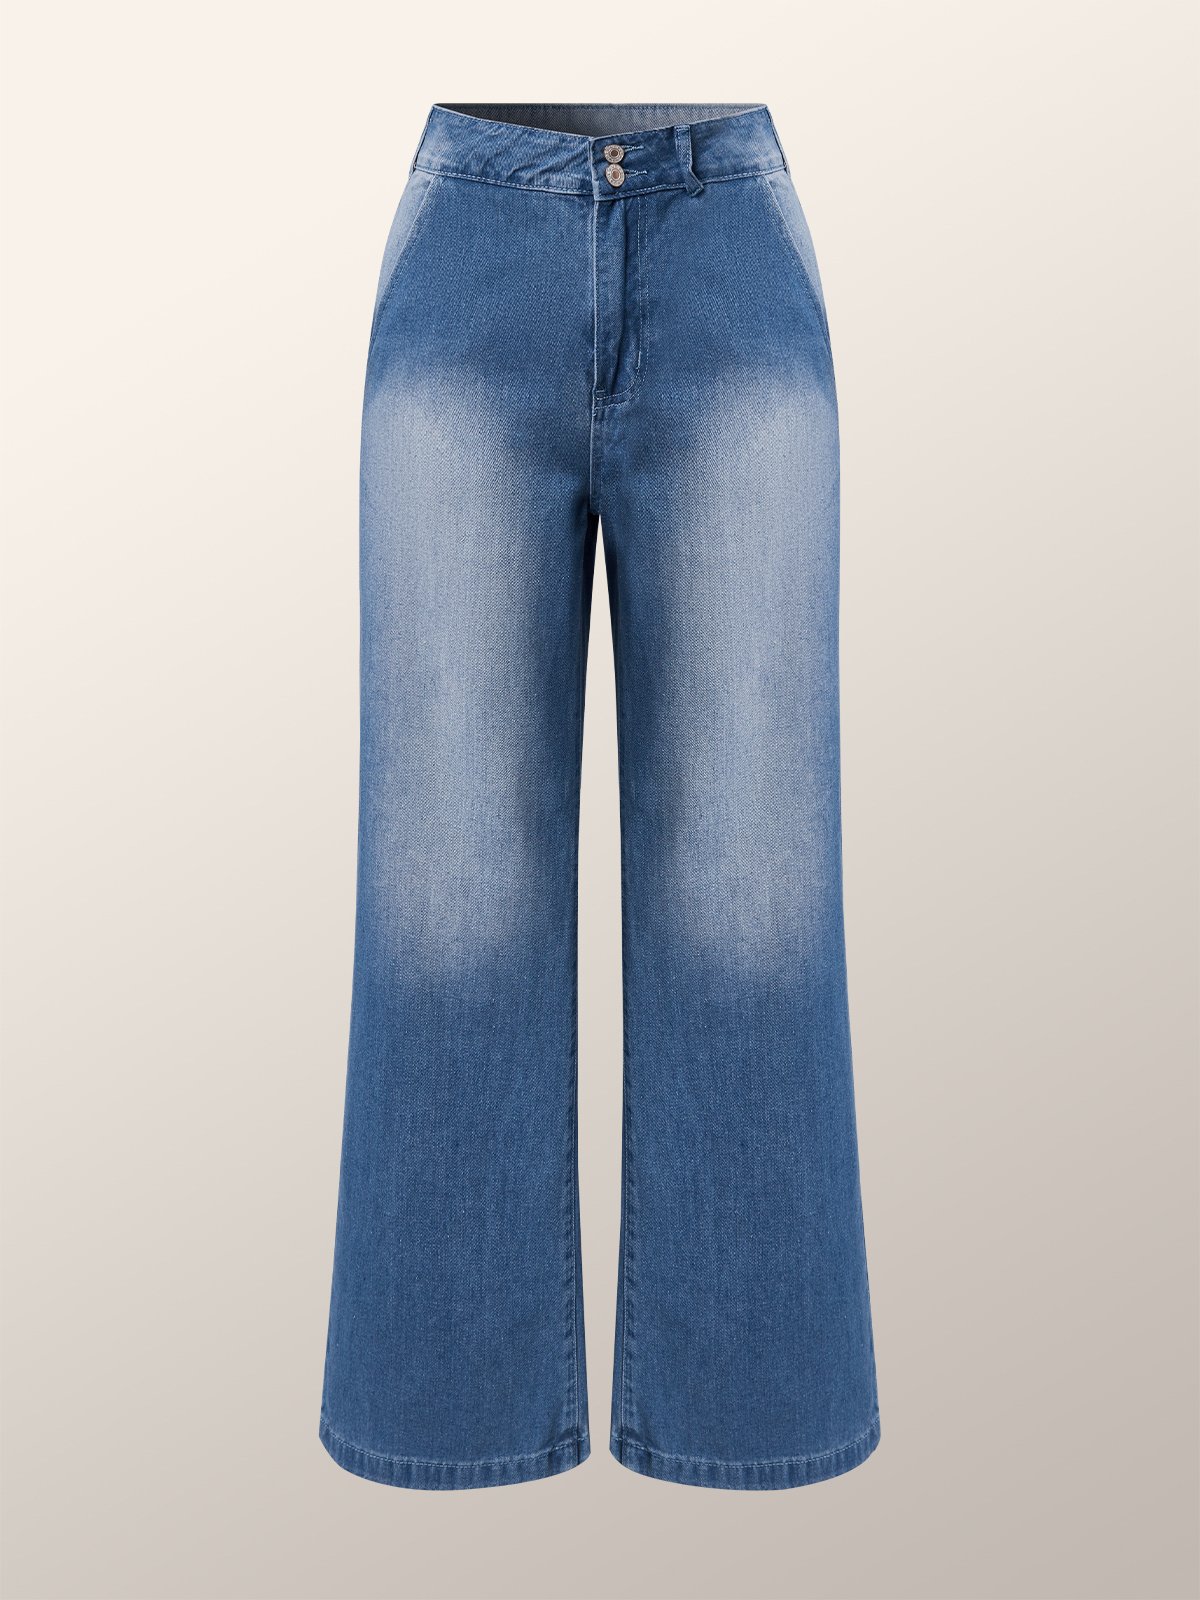 Weit Hohe Taille Unifarben Urban Weitem Bein Lang Jeans